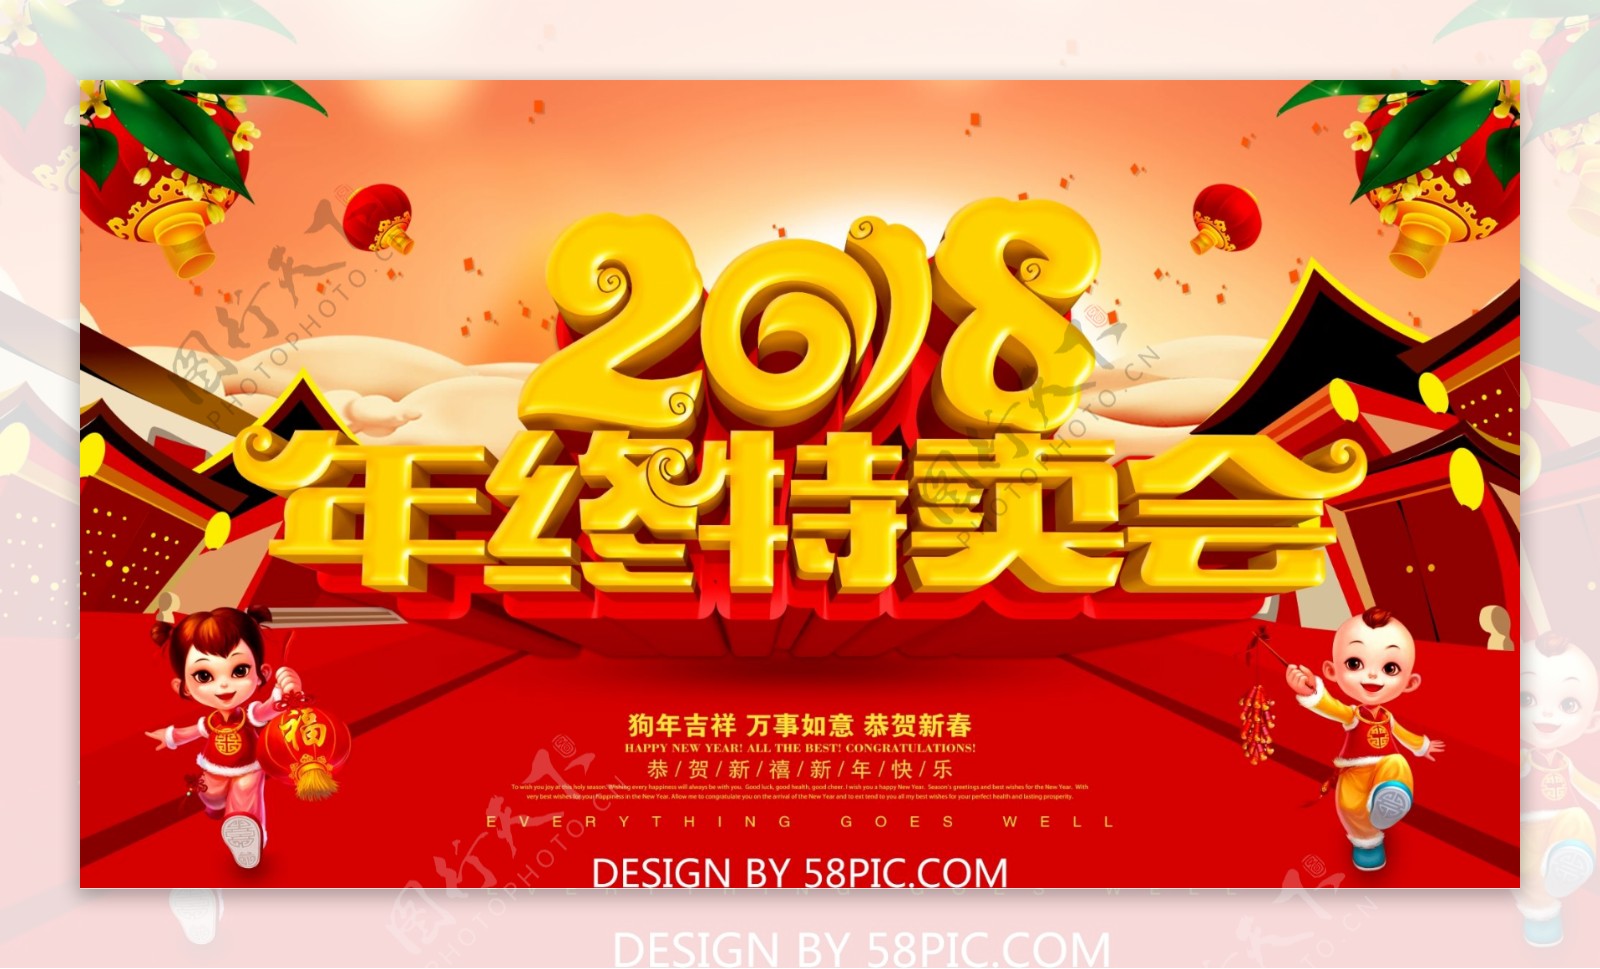 年终特卖会春节促销海报设计PSD模版